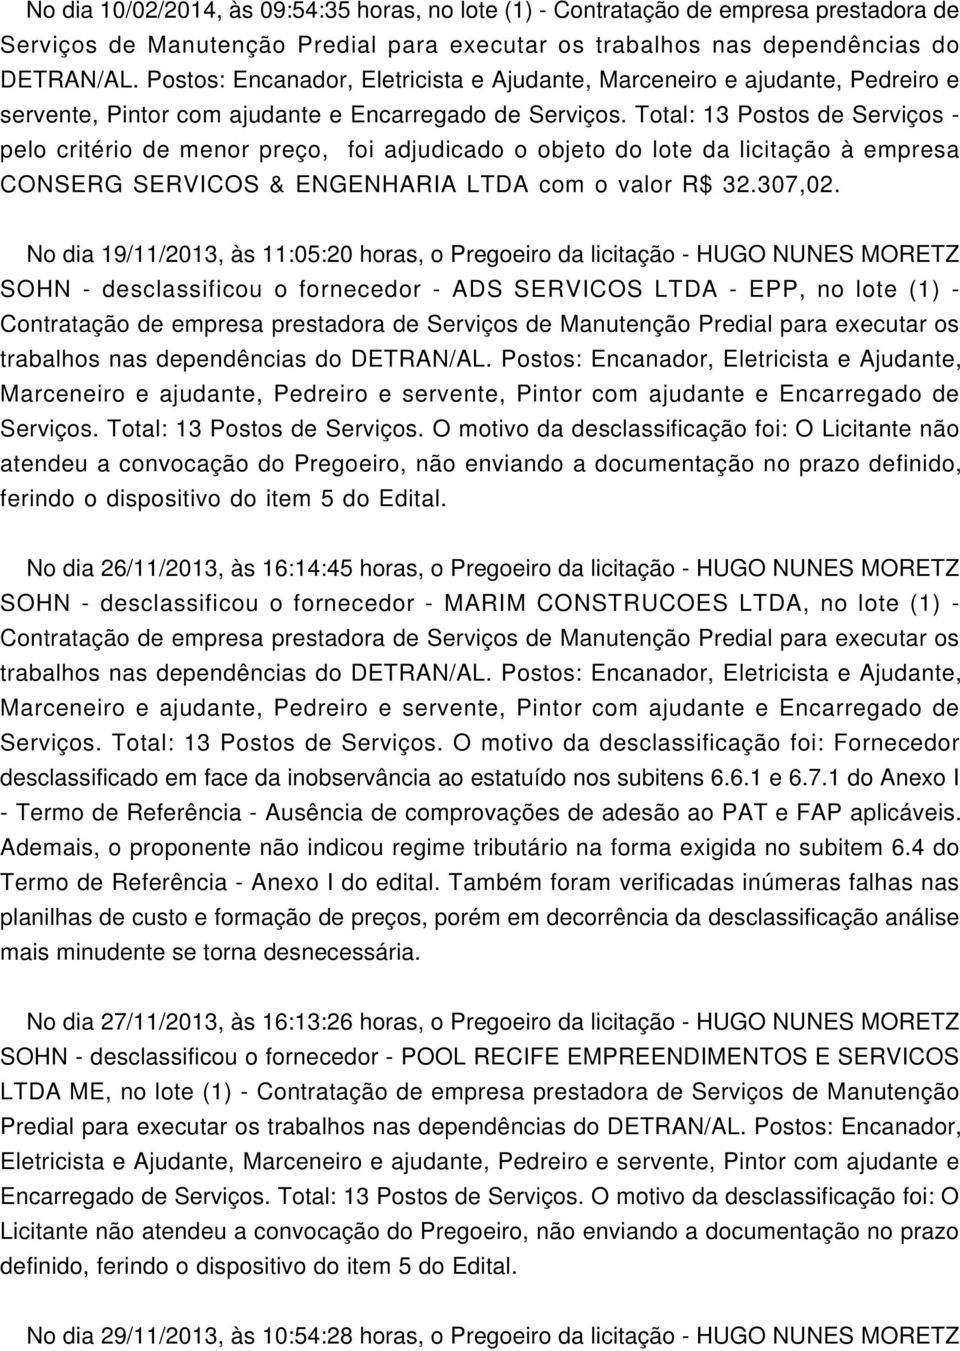 No dia 19/11/2013, às 11:05:20 horas, o Pregoeiro da licitação - HUGO NUNES MORETZ SOHN - desclassificou o fornecedor - ADS SERVICOS LTDA - EPP, no lote (1) - Serviços. Total: 13 Postos de Serviços.